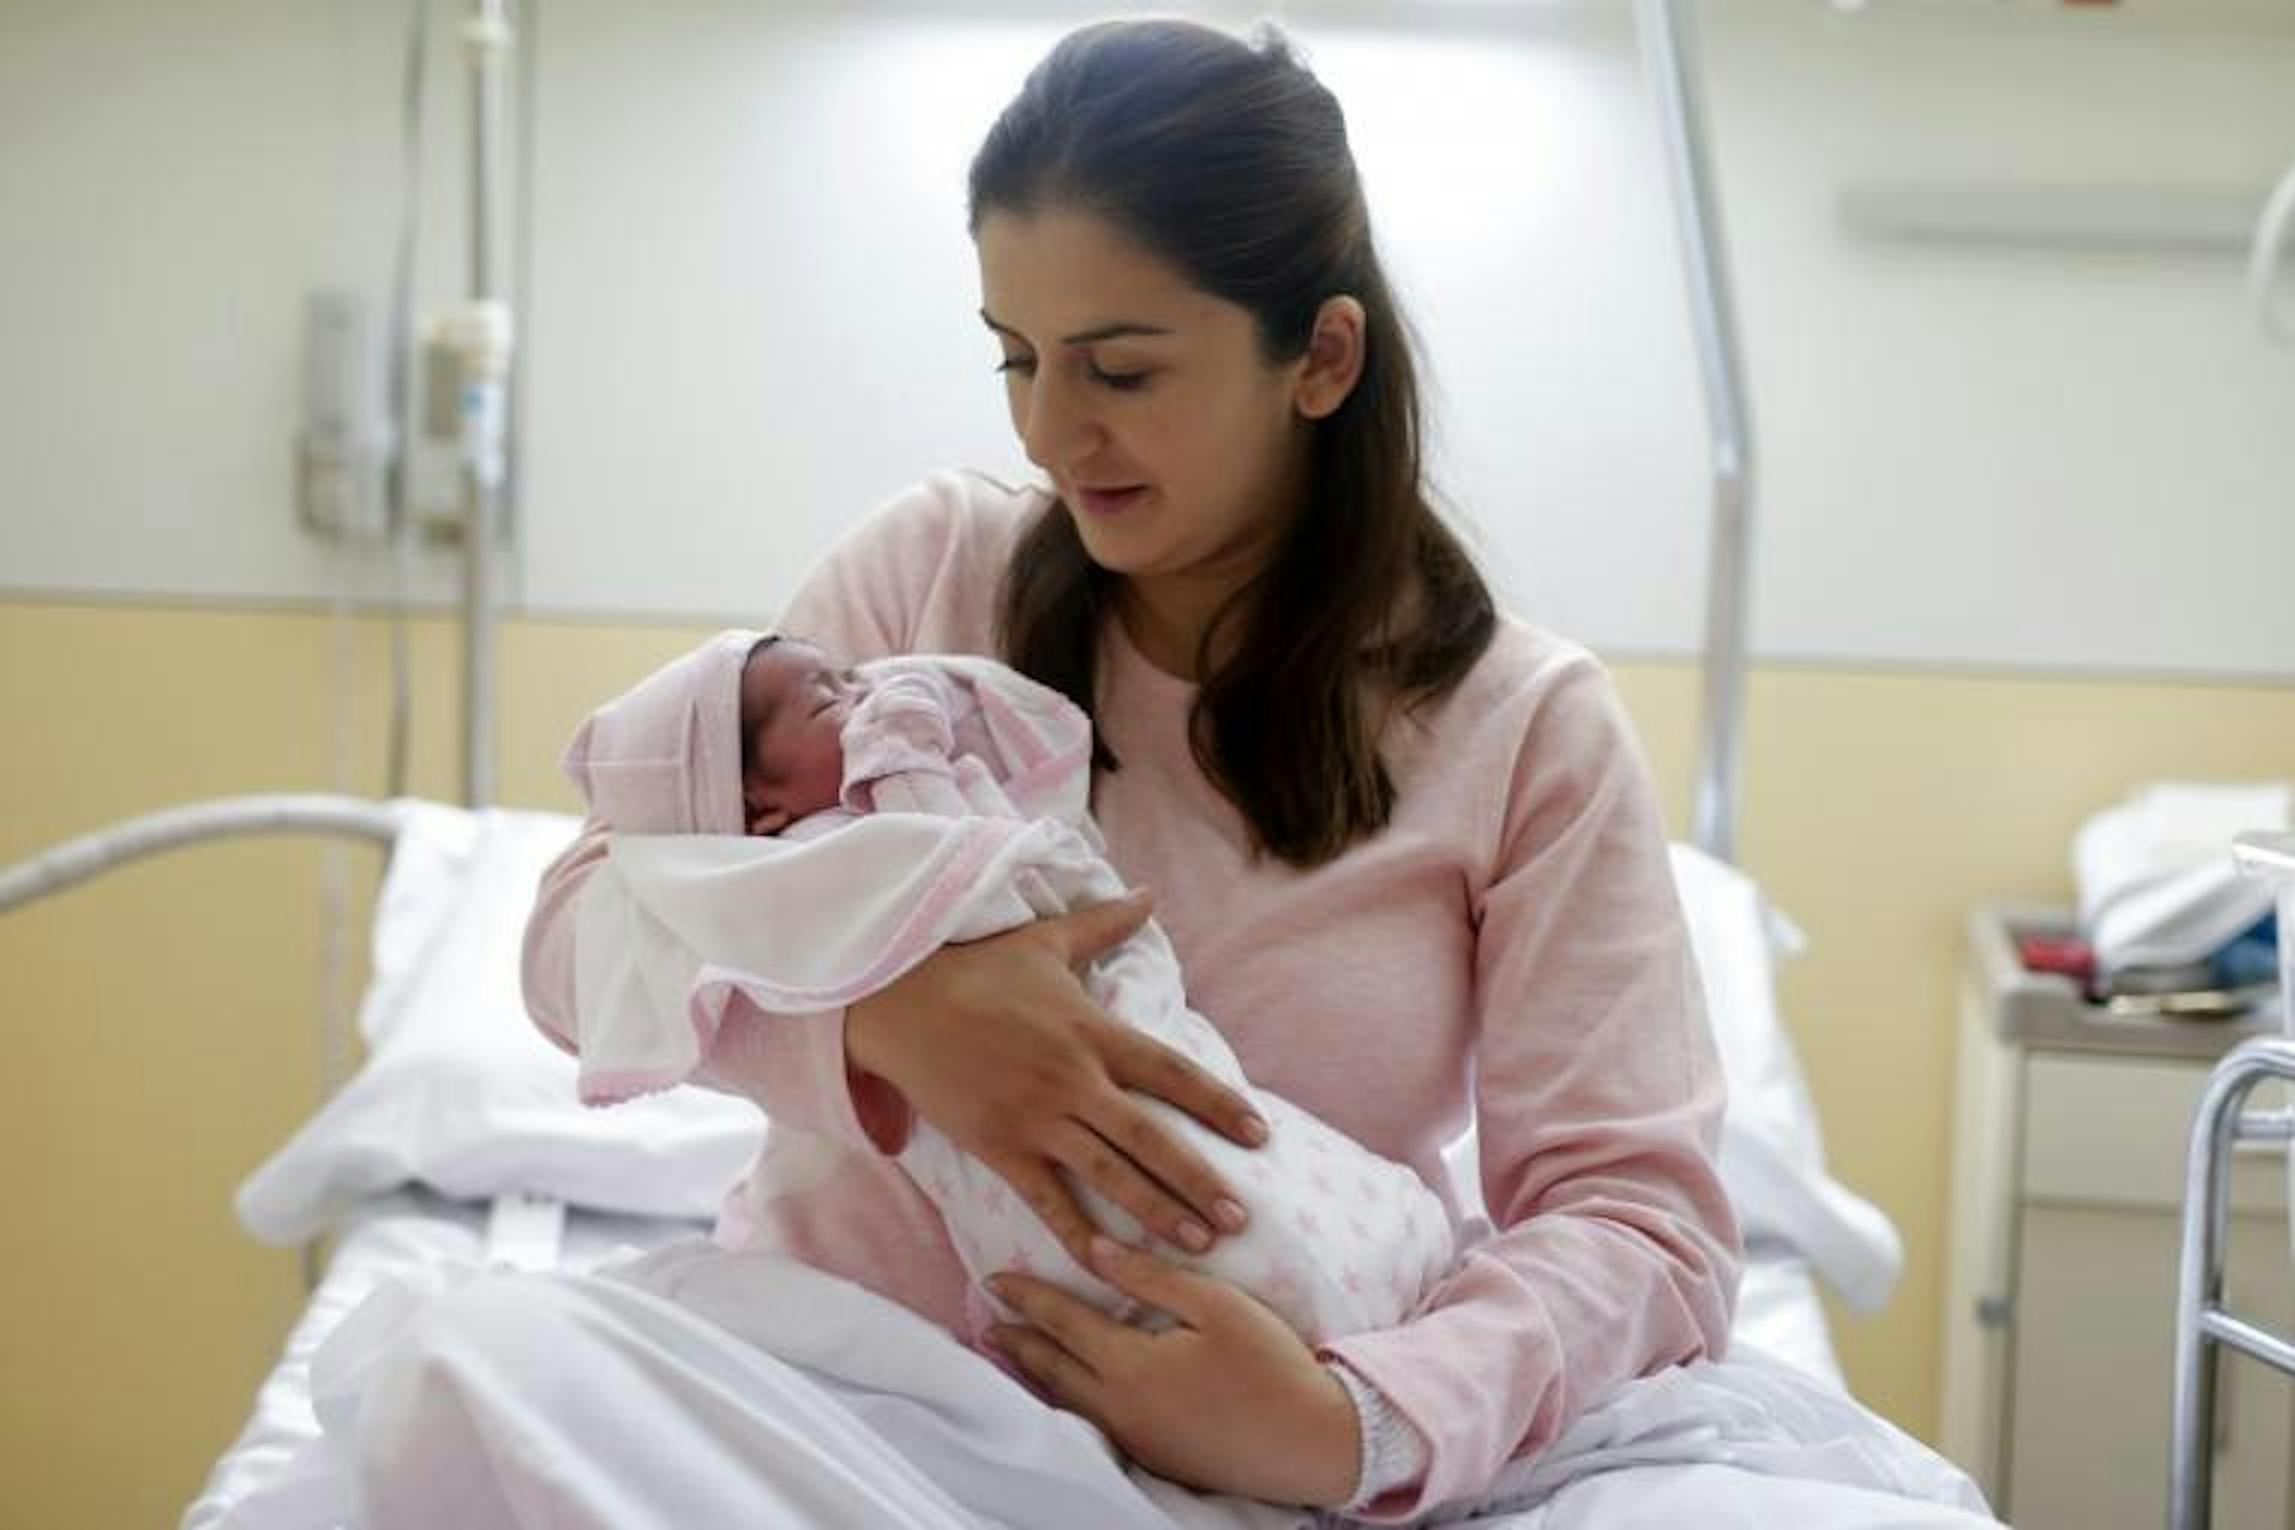 La piccola Sofia tra le braccia di mamma Lilit  nell'ospedale Vall d’Hebron di Barcellona (Spagna) - © UNICEF/UN0269508/Barrena-Capilla AFP-Services